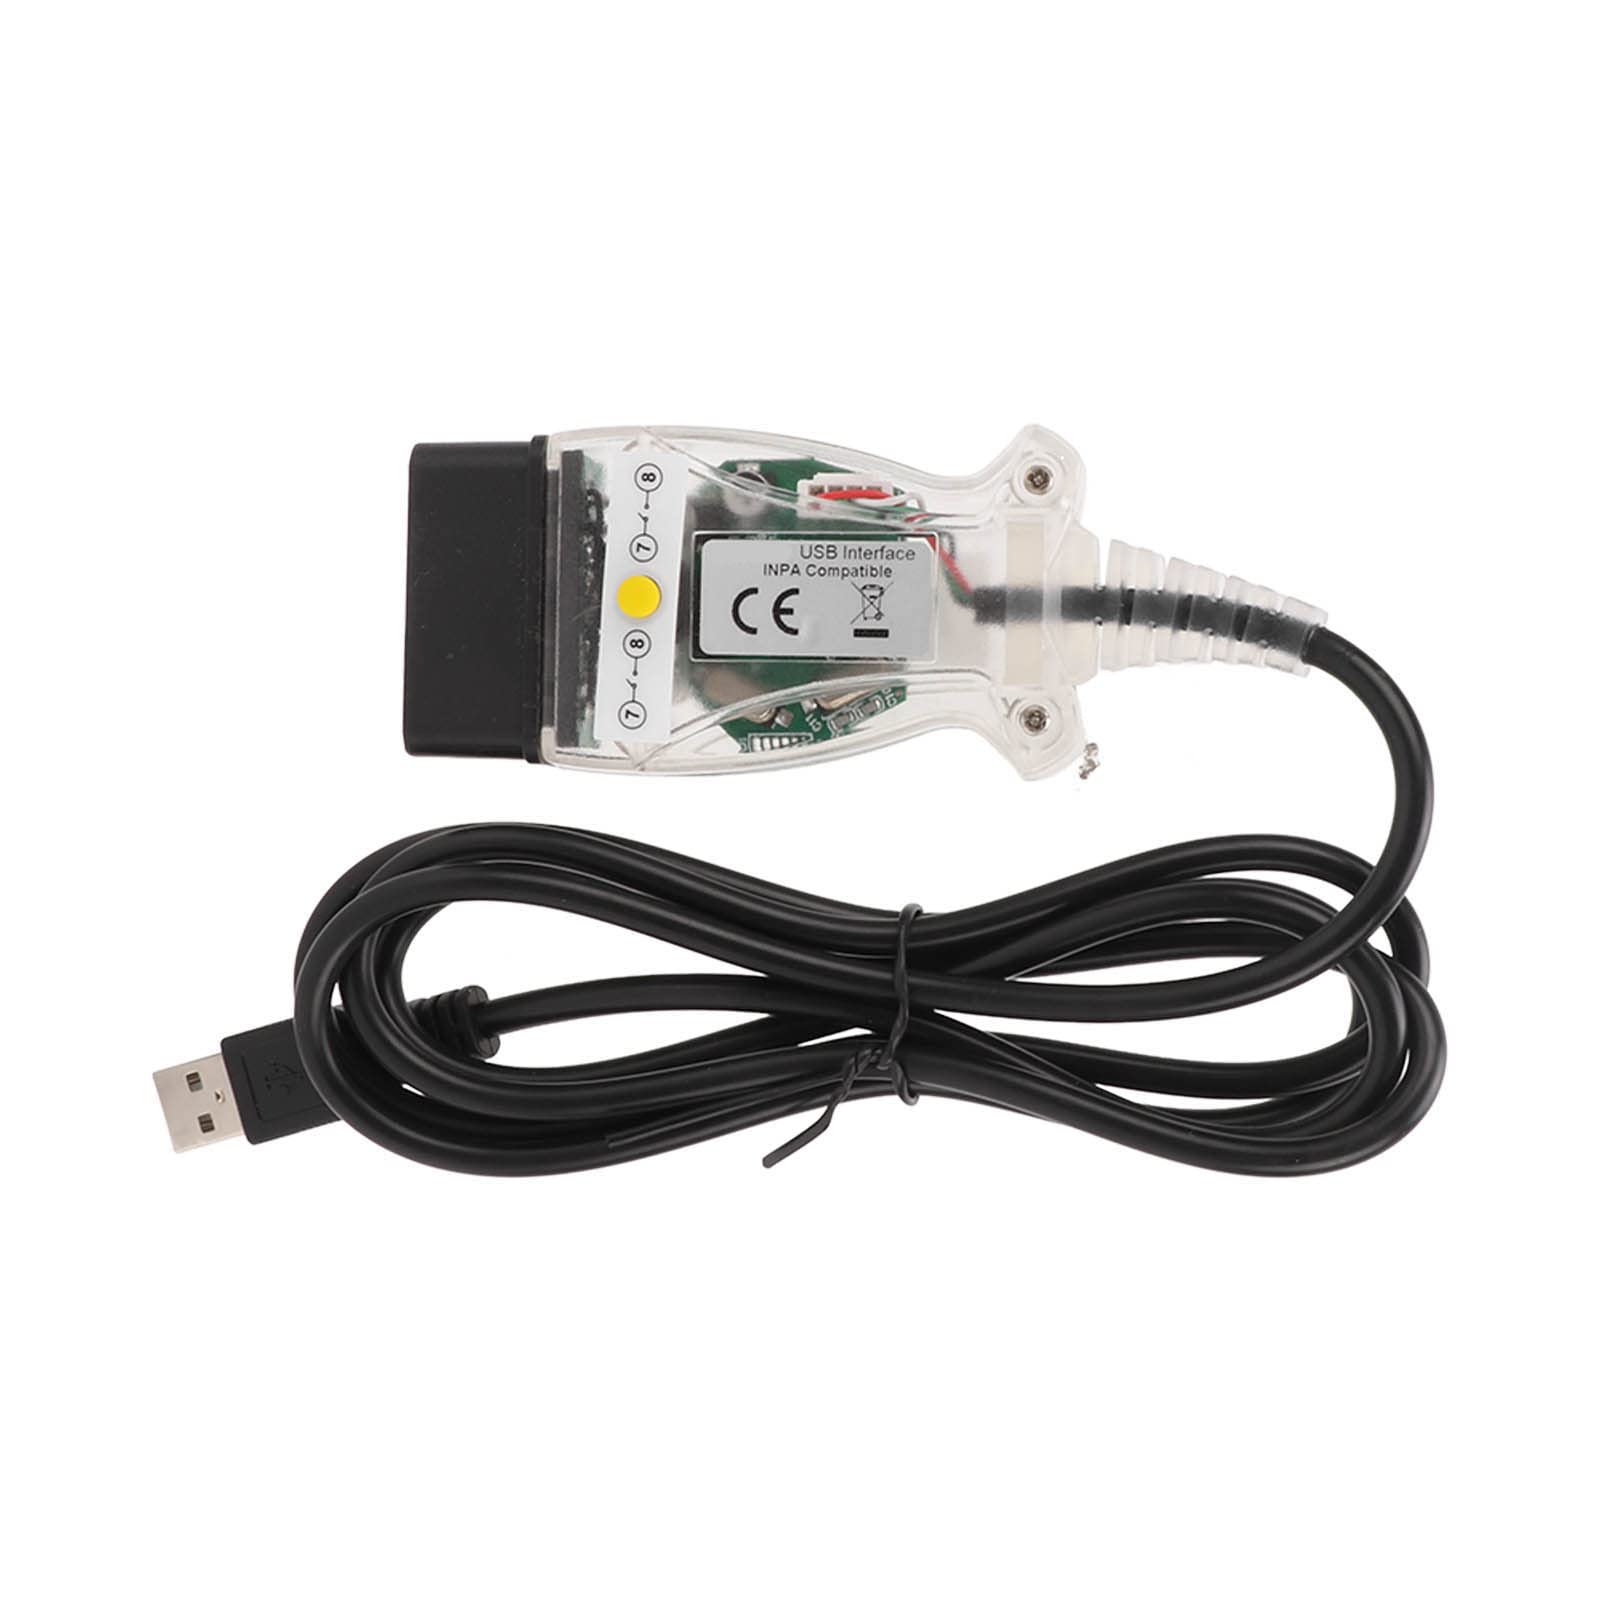 K+DCAN Kabel mit Schalter USB Schnittstelle Auto OBD2 Diagnosetool für E60 E61 E81 E70 E83 E87 E90 E91 E92 E93 Kfz-Elektronik von Keenso